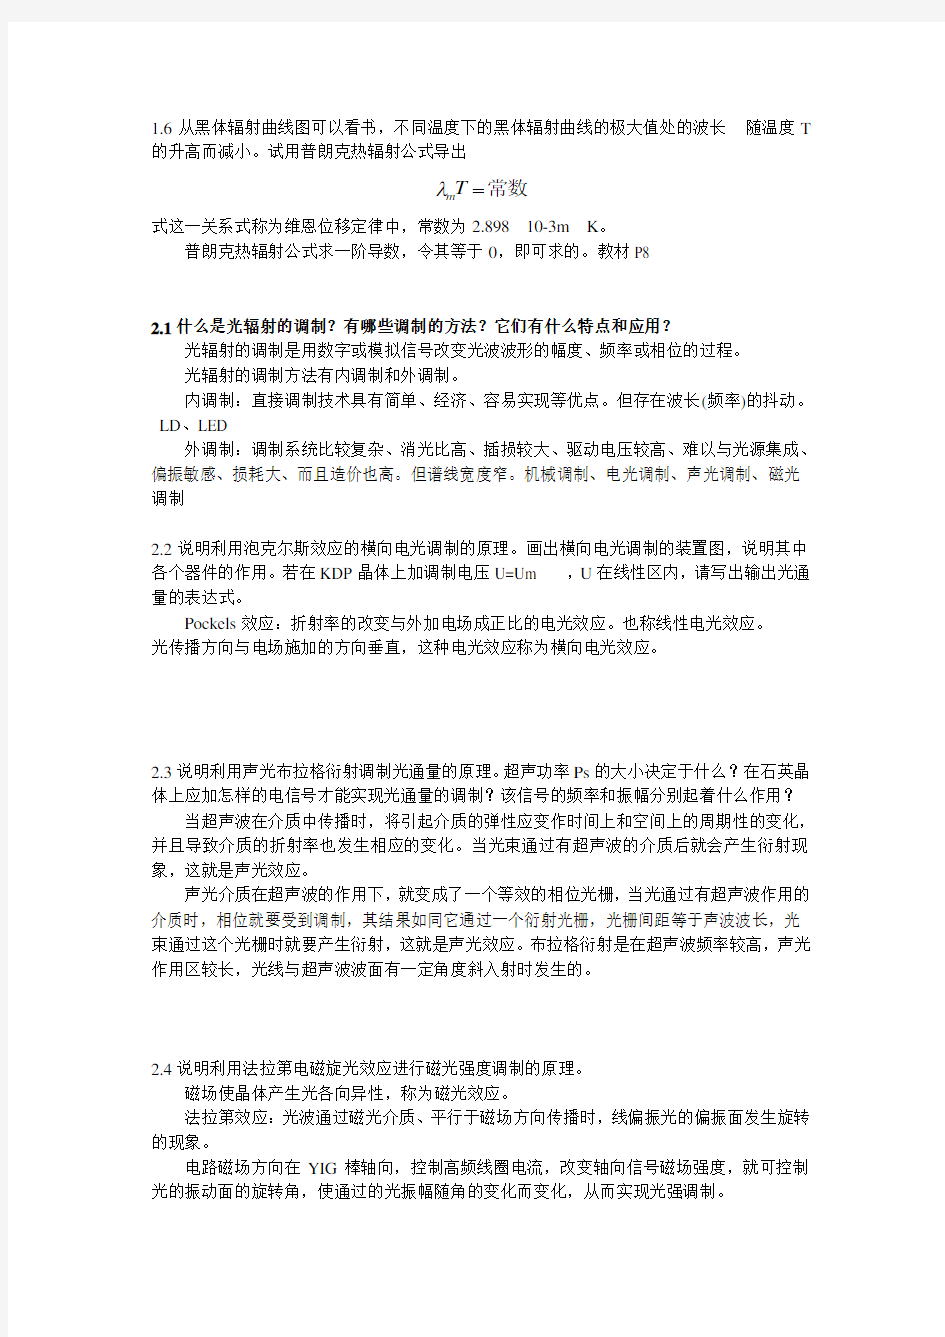 张永林 第二版《光电子技术》课后习题答案.doc